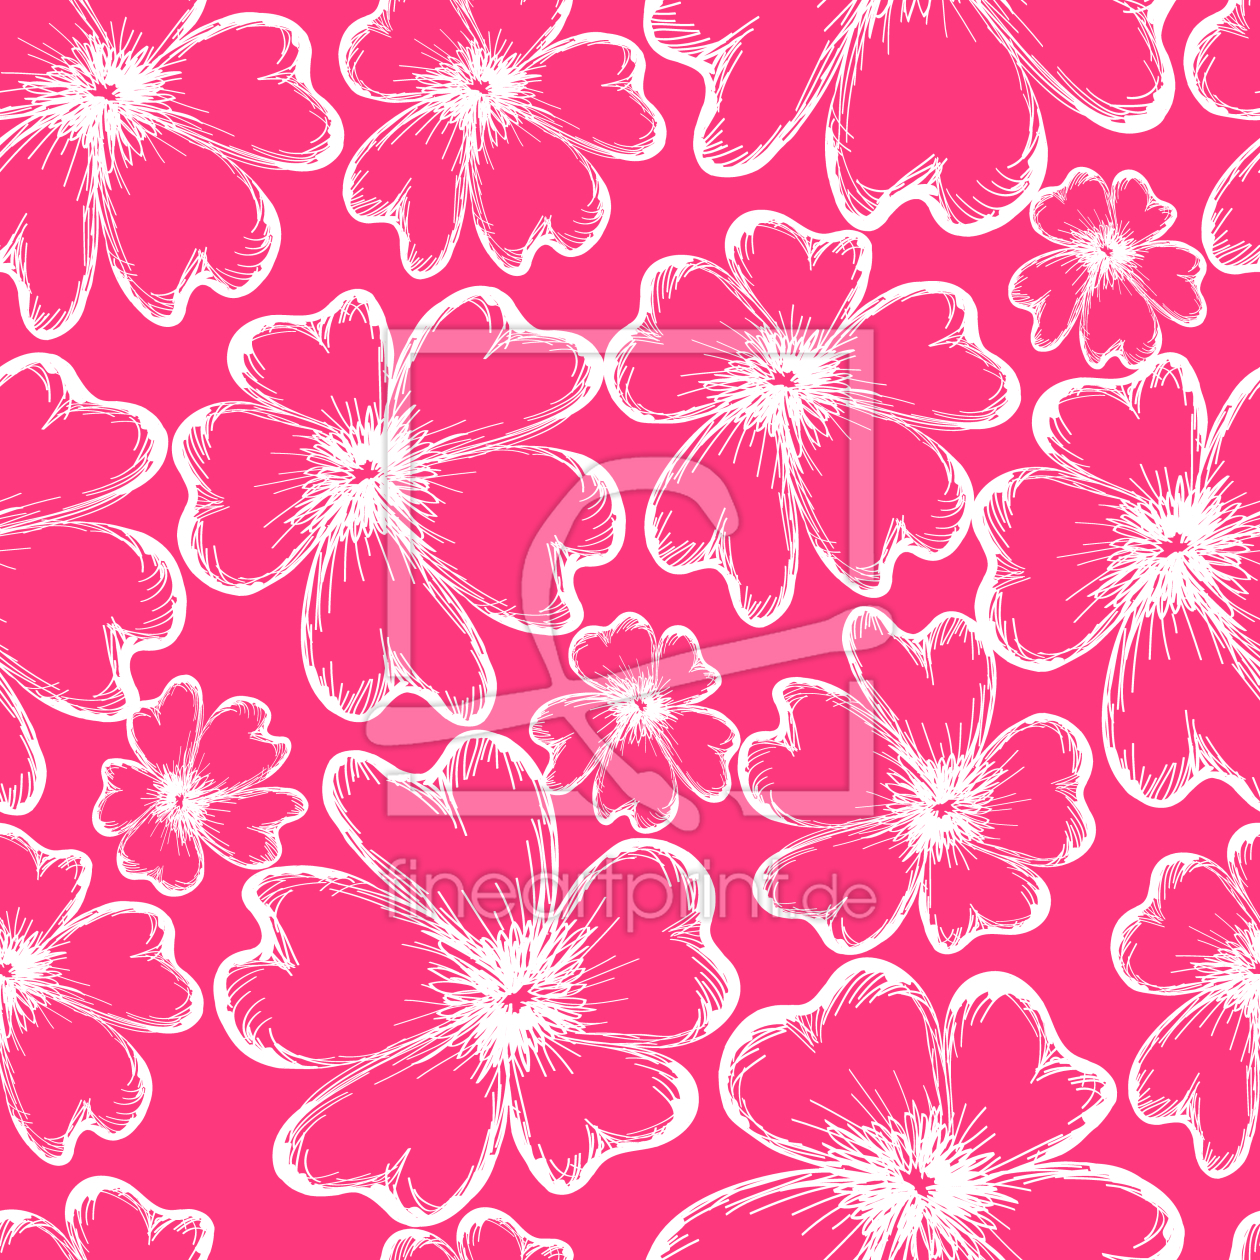 Bild-Nr.: 9010840 Romantische Blumensilhouetten erstellt von patterndesigns-com